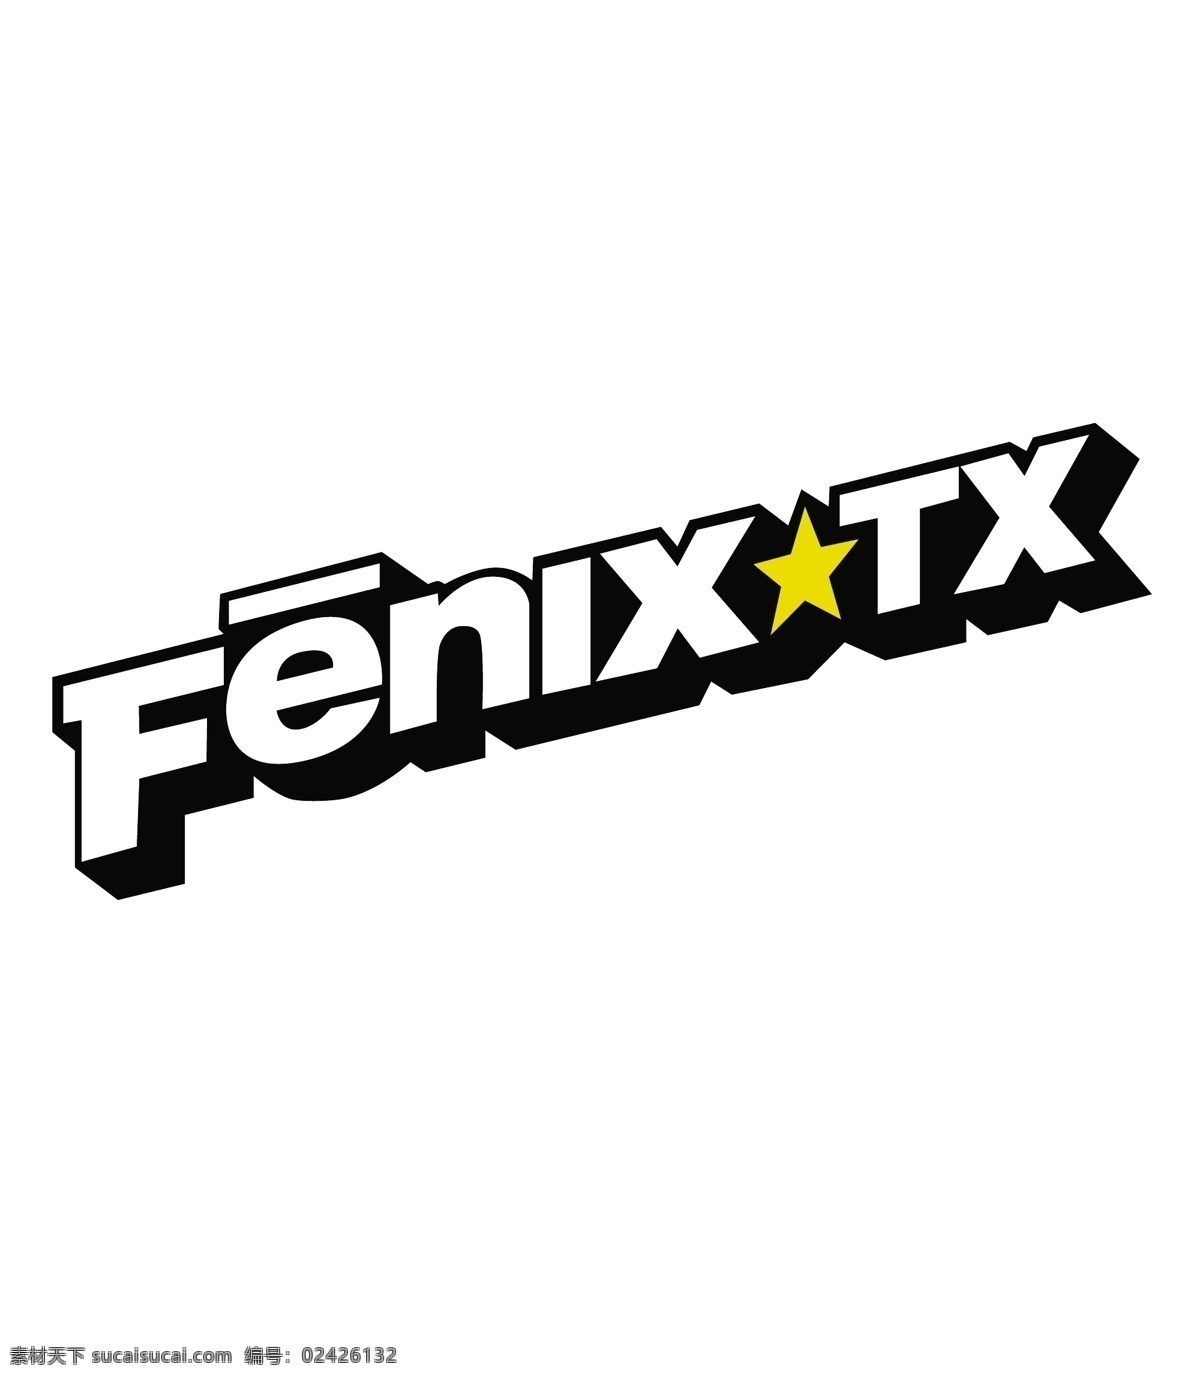 菲尼克斯tx 矢量标志下载 免费矢量标识 商标 品牌标识 标识 矢量 免费 品牌 公司 白色